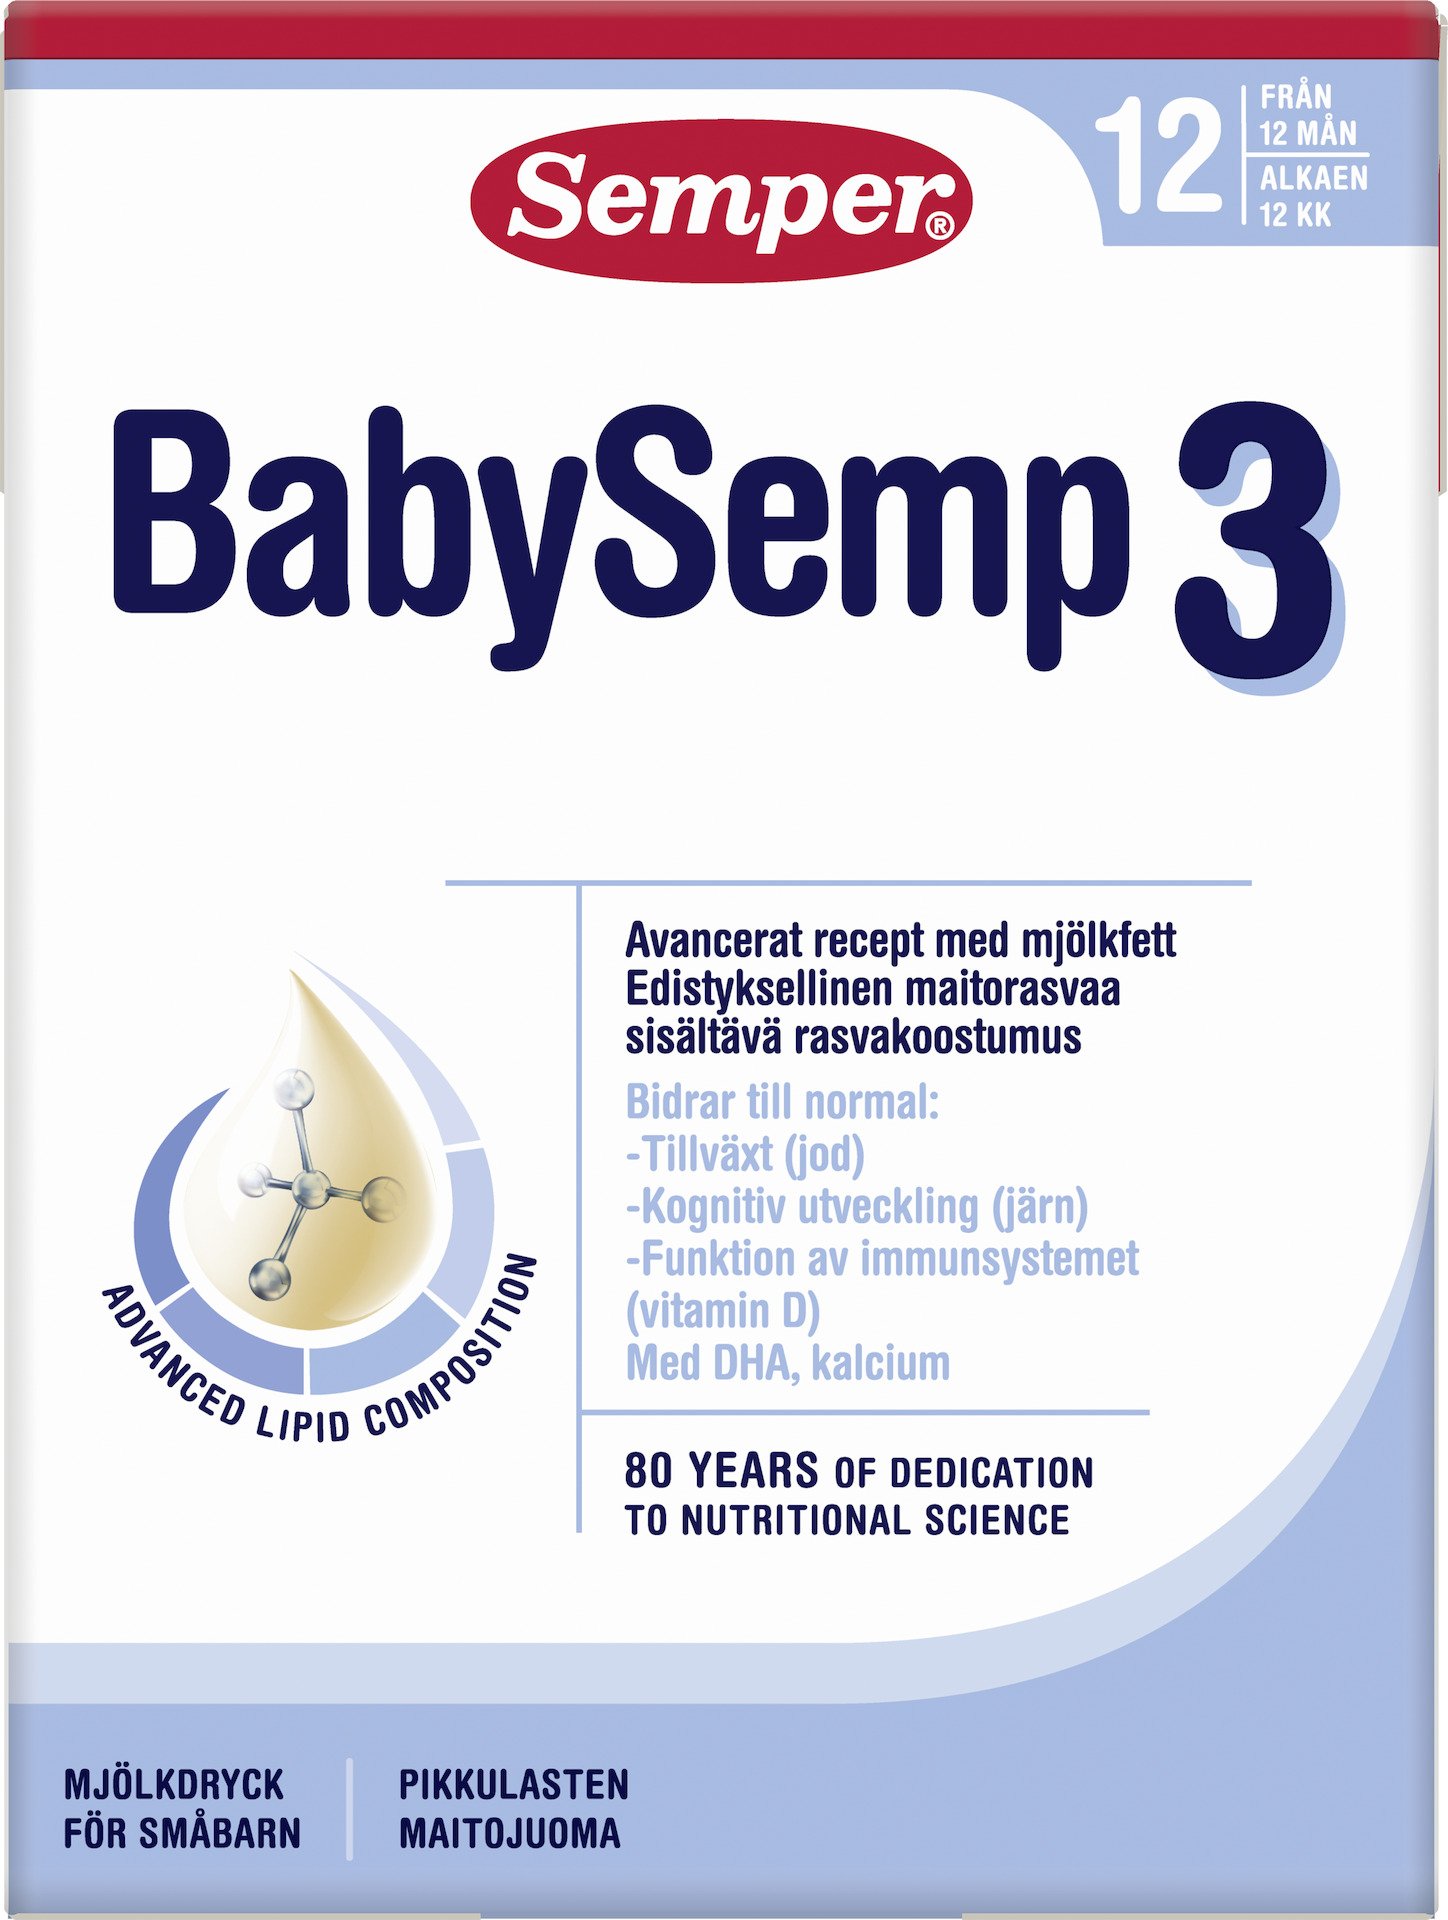 Semper BabySemp 3 Drickfärdig Mjölkdryck 200 ml